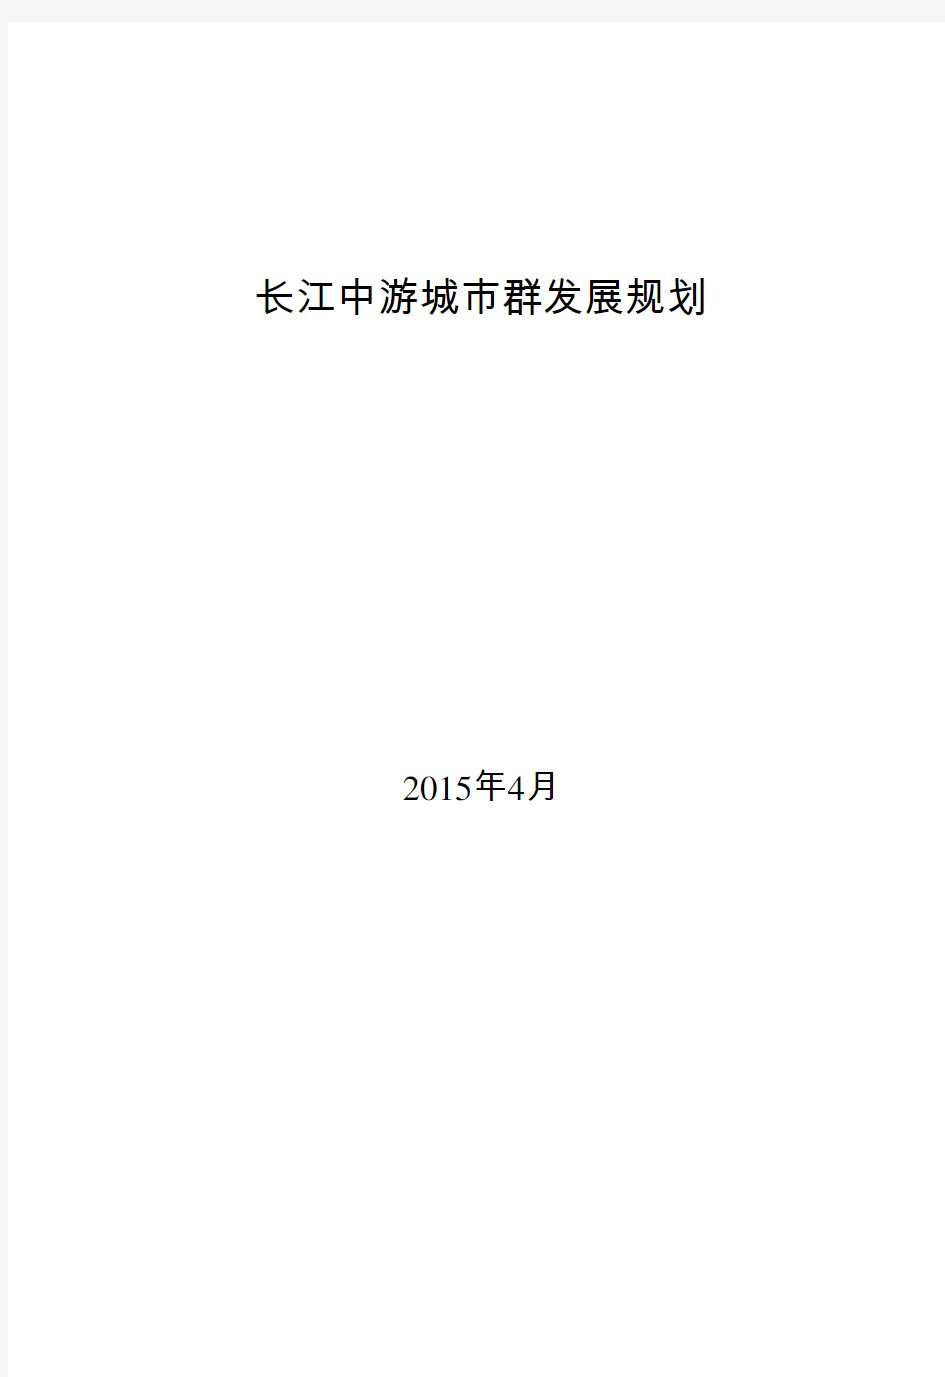 全文发布版《长江中游城市群发展规划》